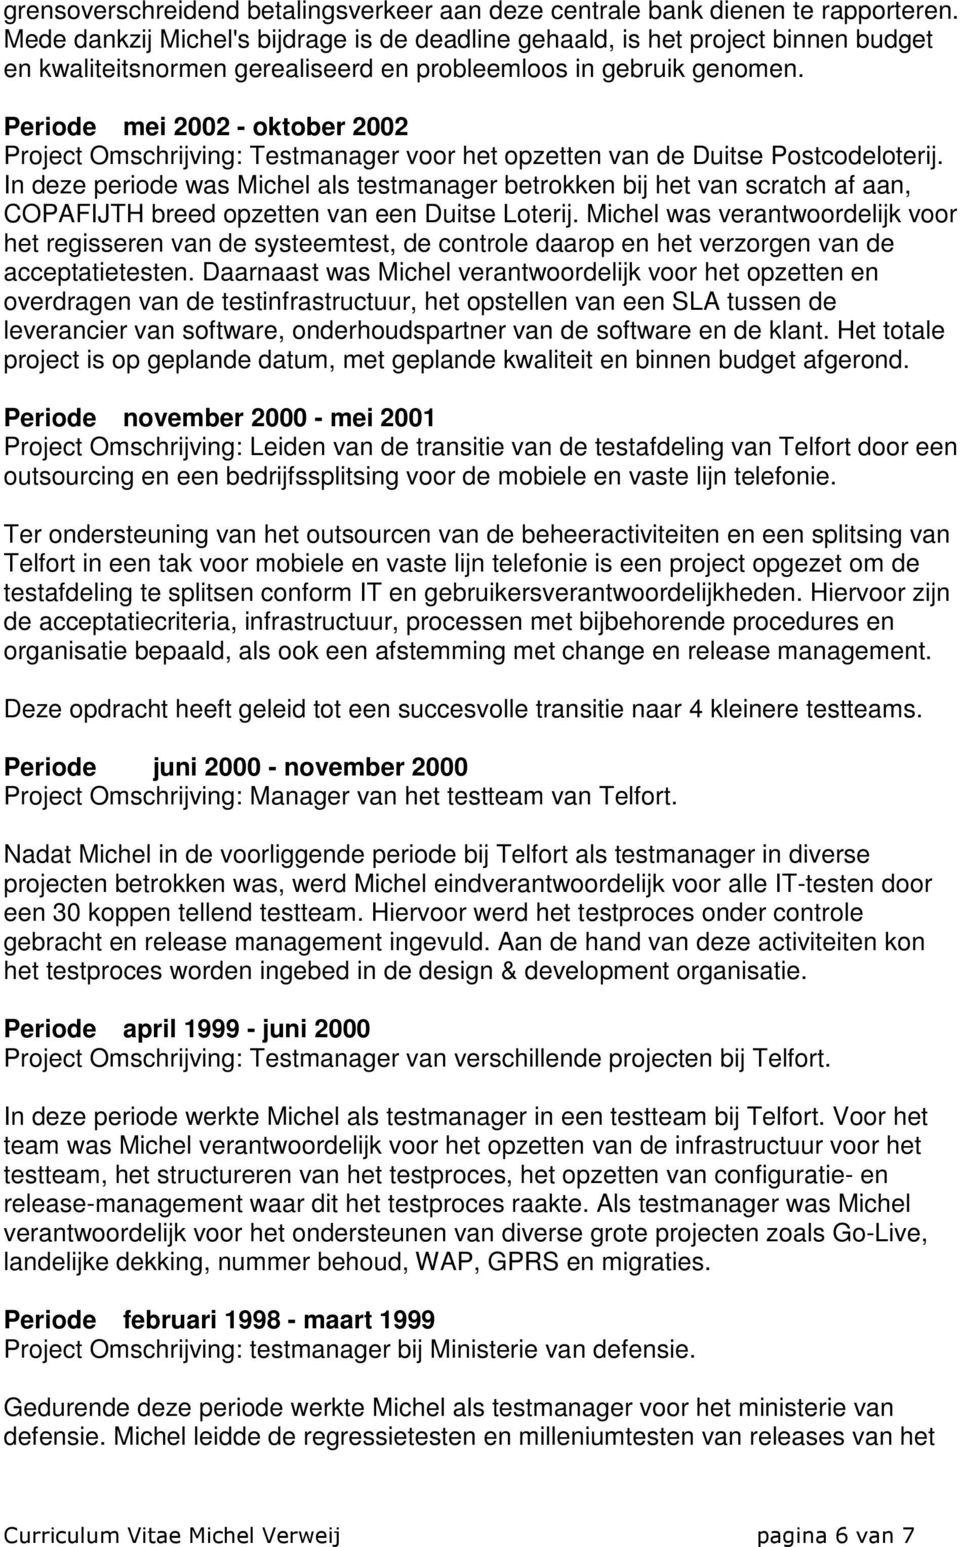 Periode mei 2002 - oktober 2002 Project Omschrijving: Testmanager voor het opzetten van de Duitse Postcodeloterij.